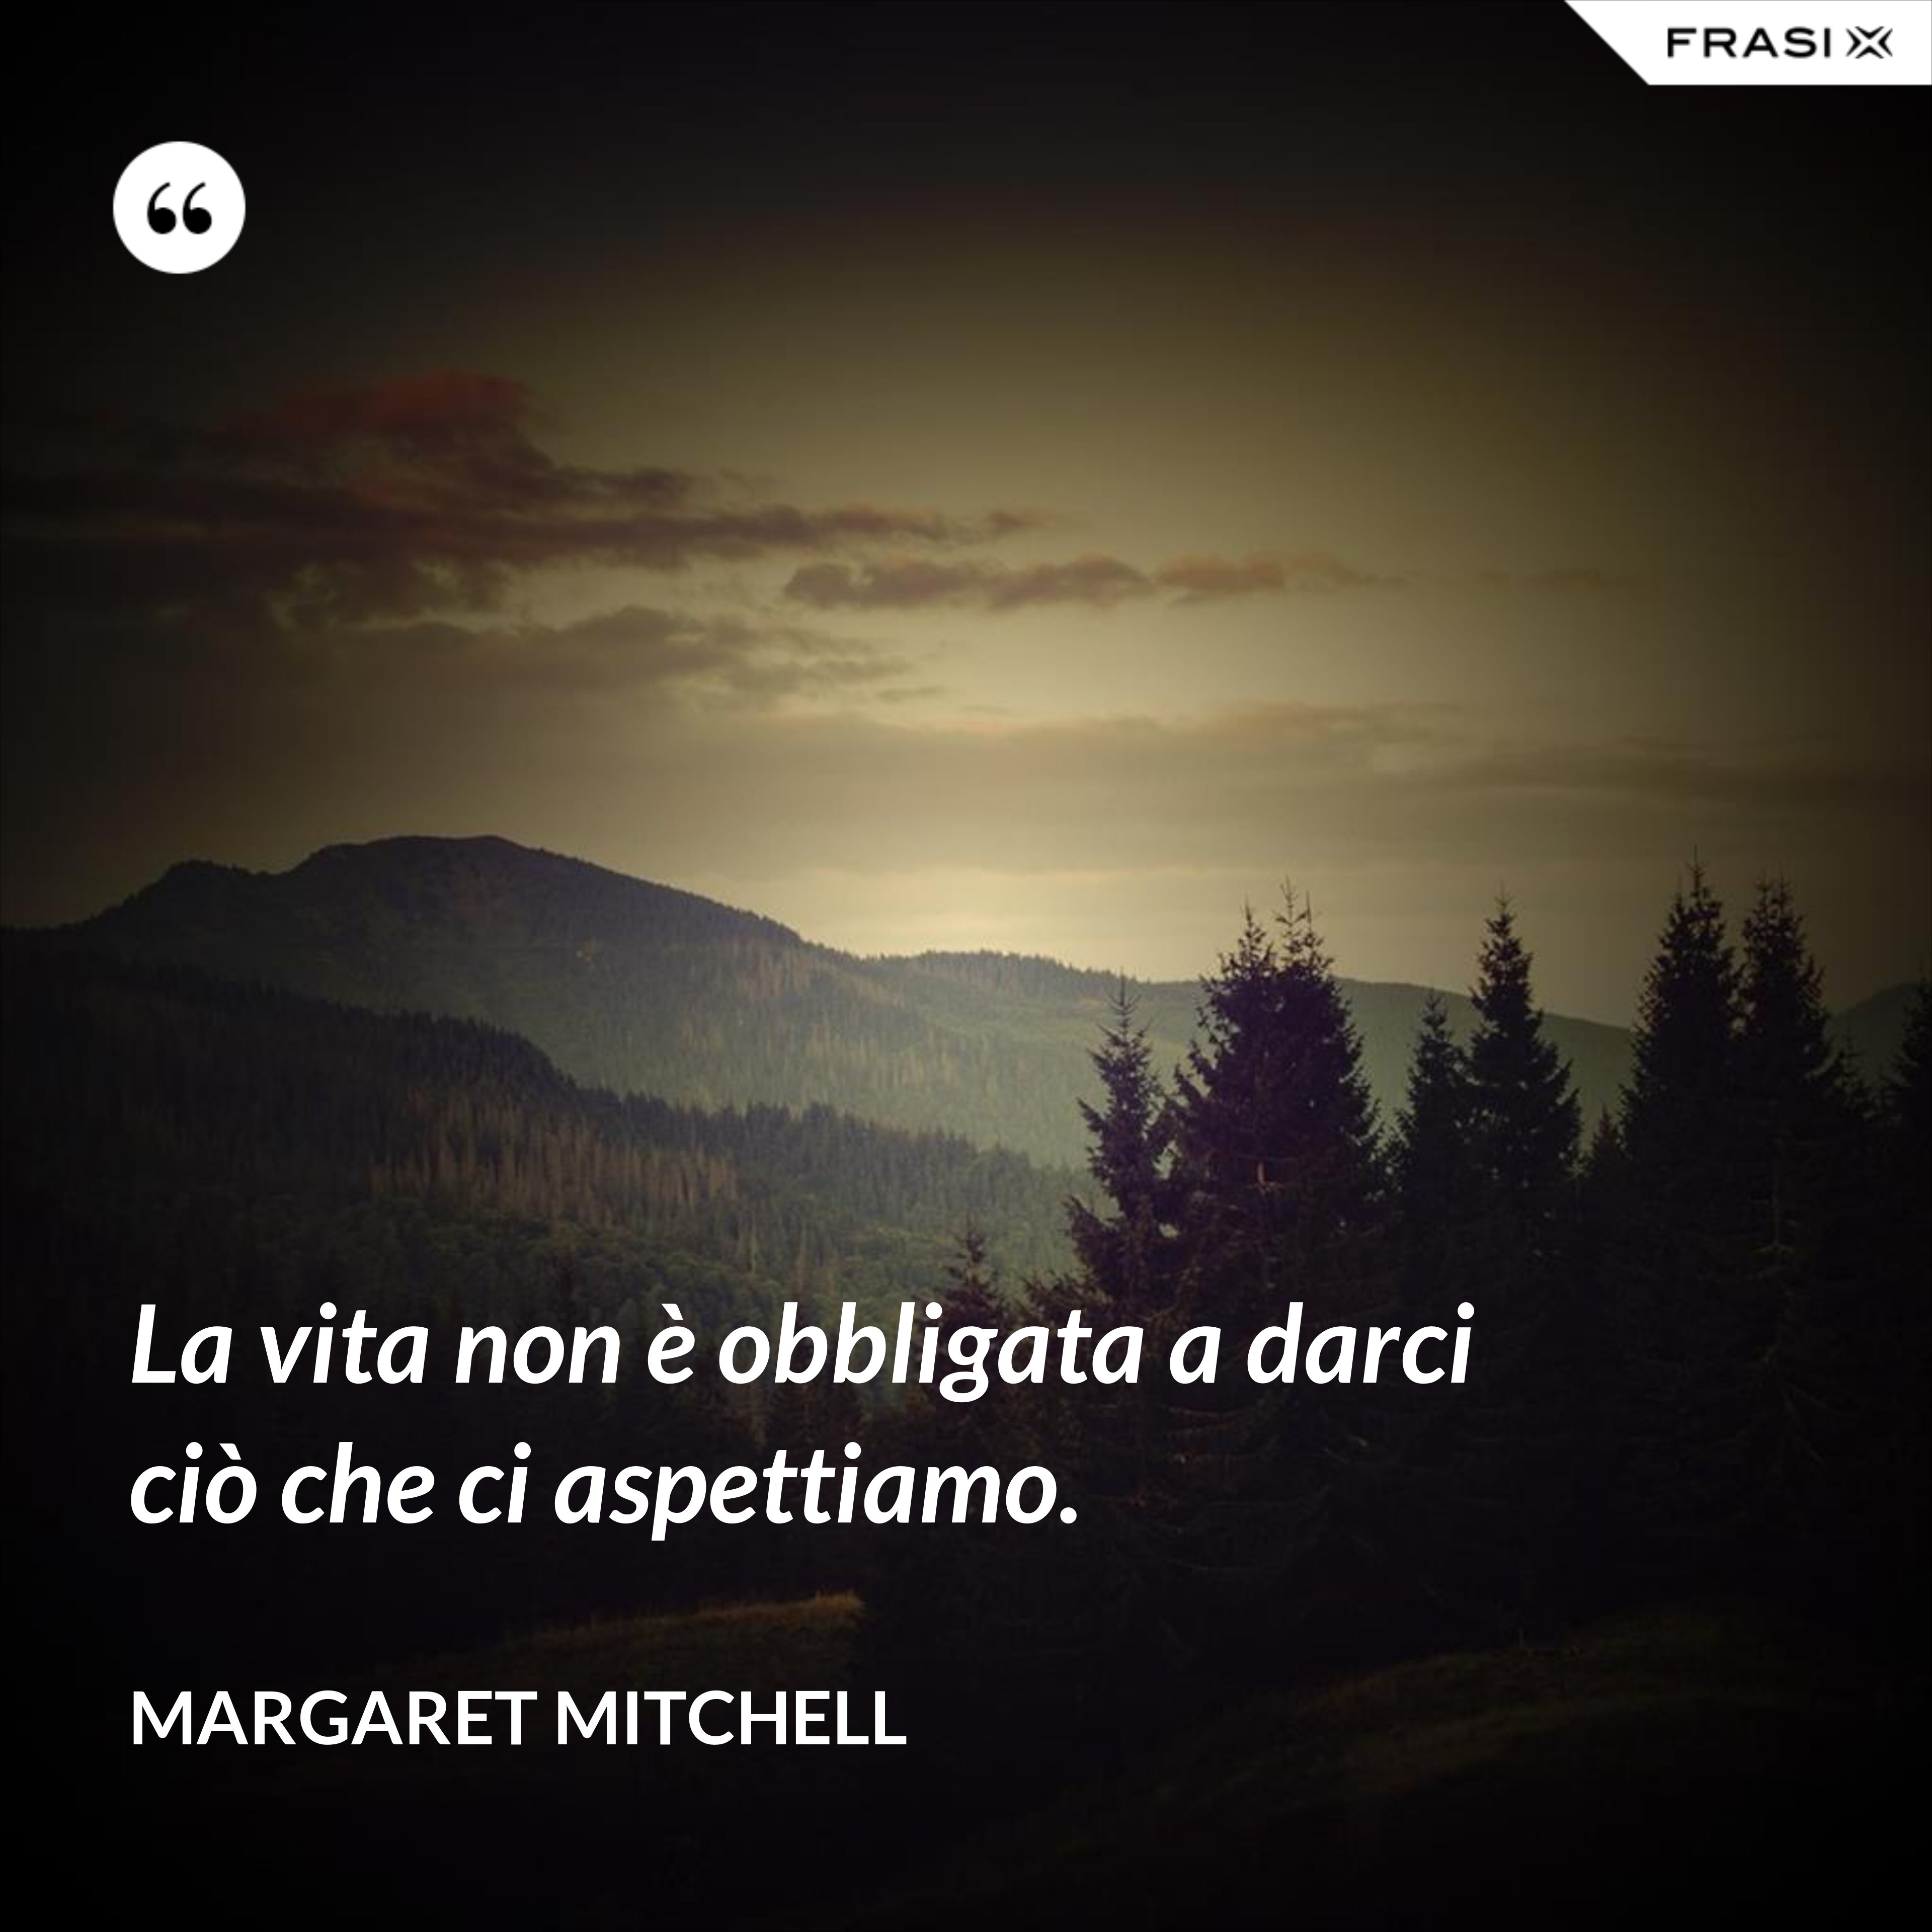 La vita non è obbligata a darci ciò che ci aspettiamo. - Margaret Mitchell